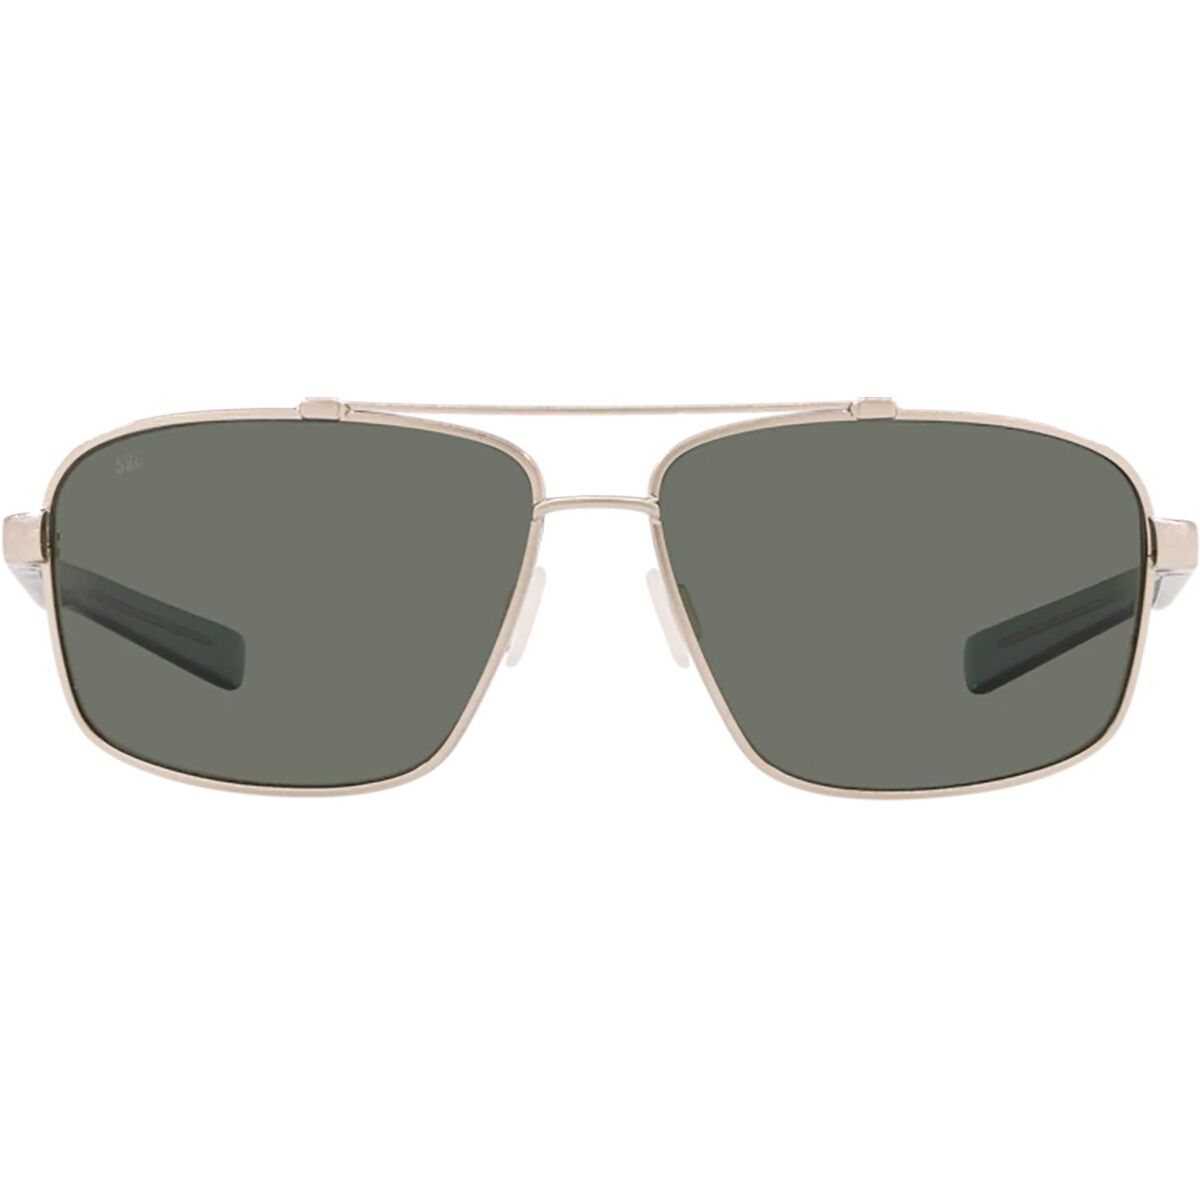 Costa Flagler 580G Polarized Sunglasses - Accessories